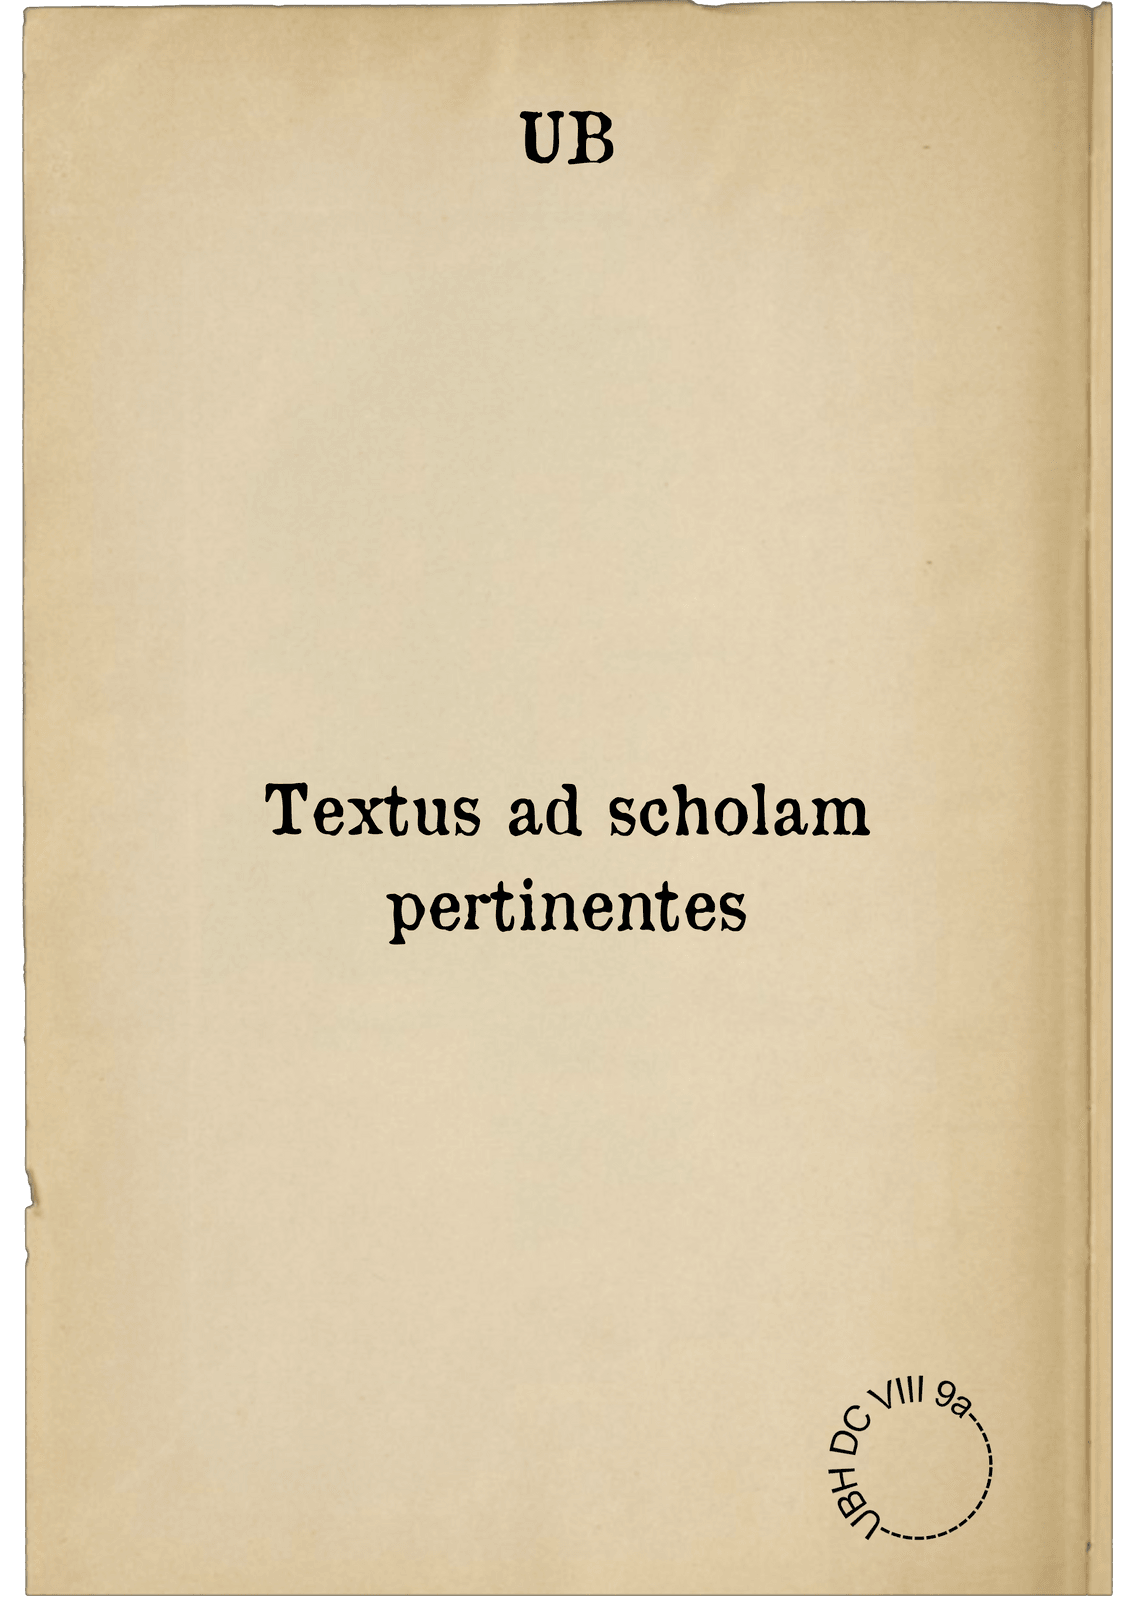 Textus ad scholam pertinentes